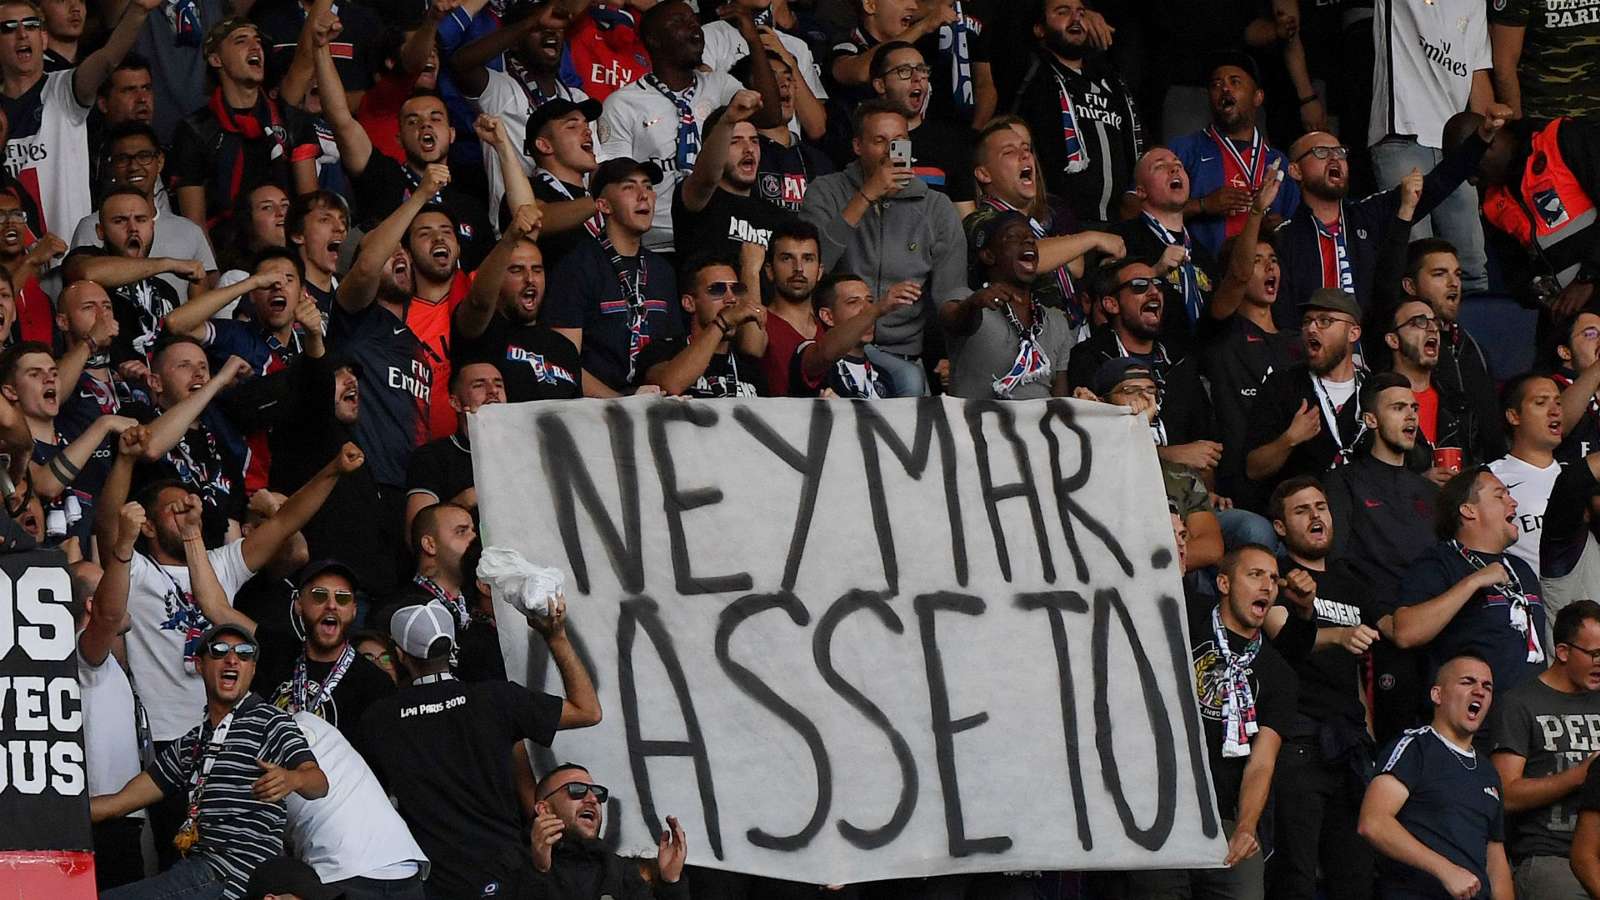 Neymar, em gái neymar, neymar văng tục, PSG, CĐV PSG. tẩy chay neymar, neymar psg, em gái, em gái văng tục